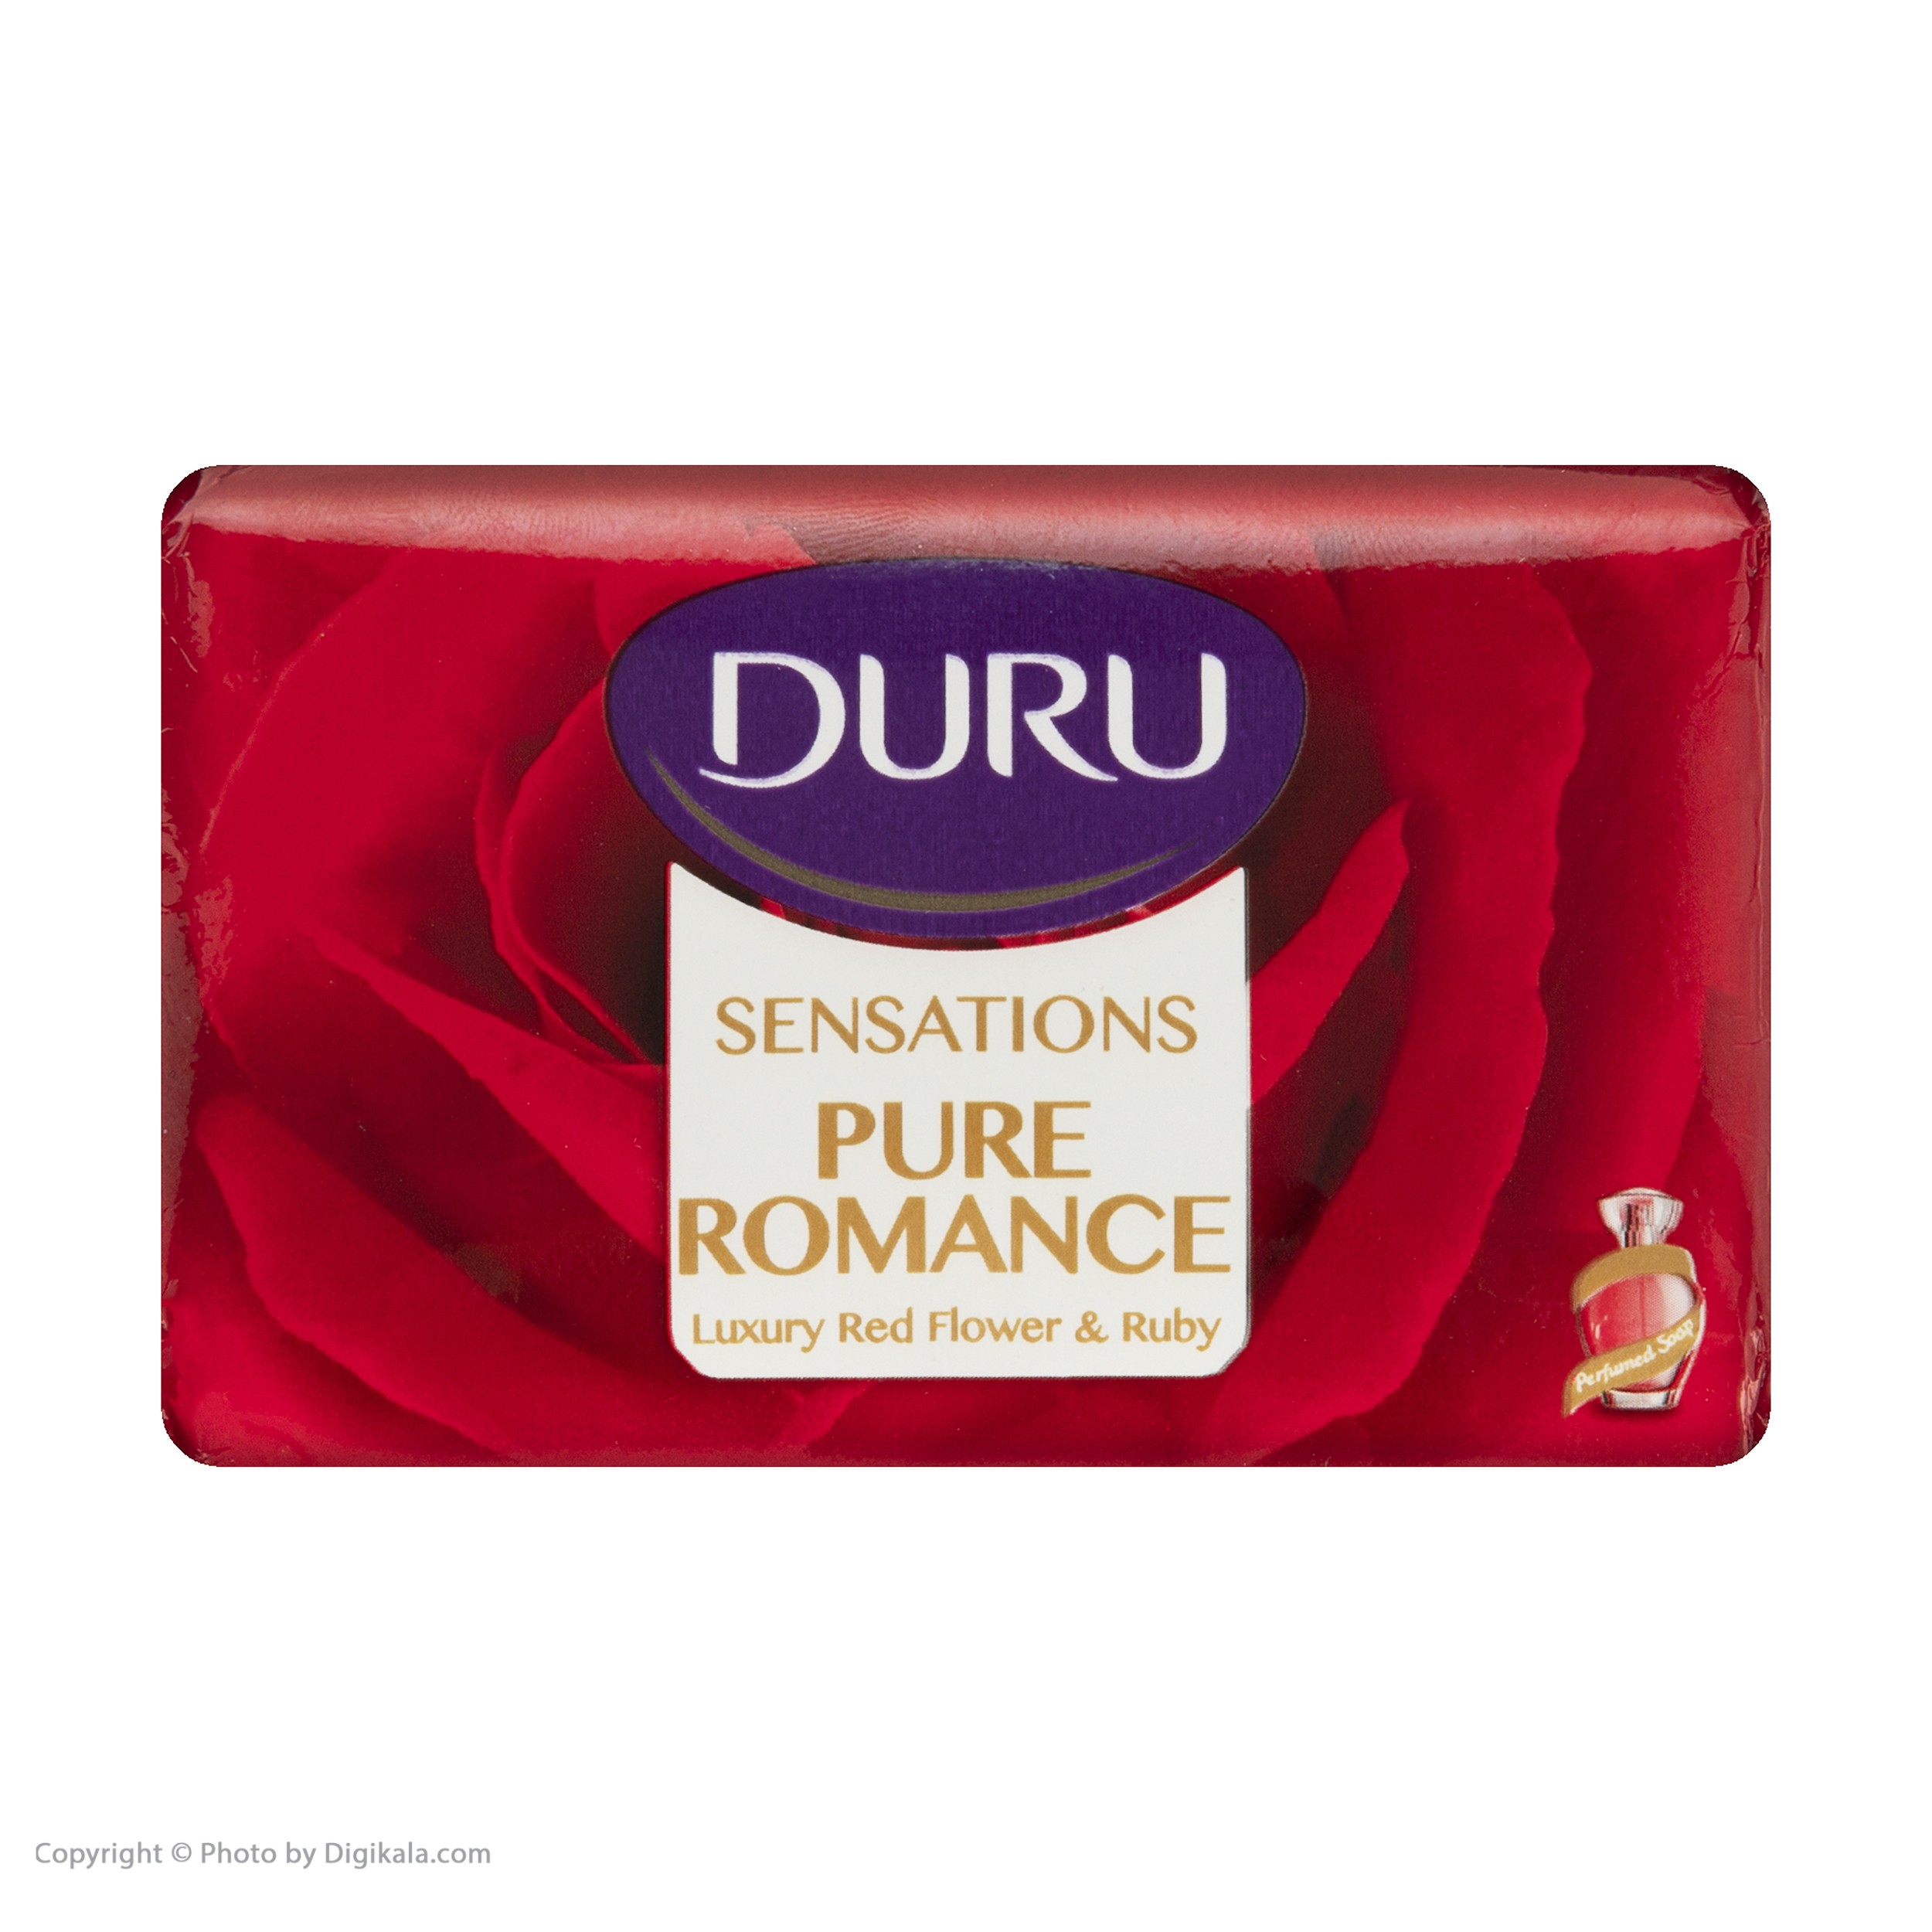  صابون دورو مدل Pure Romance مقدار 125 گرم  -  - 4